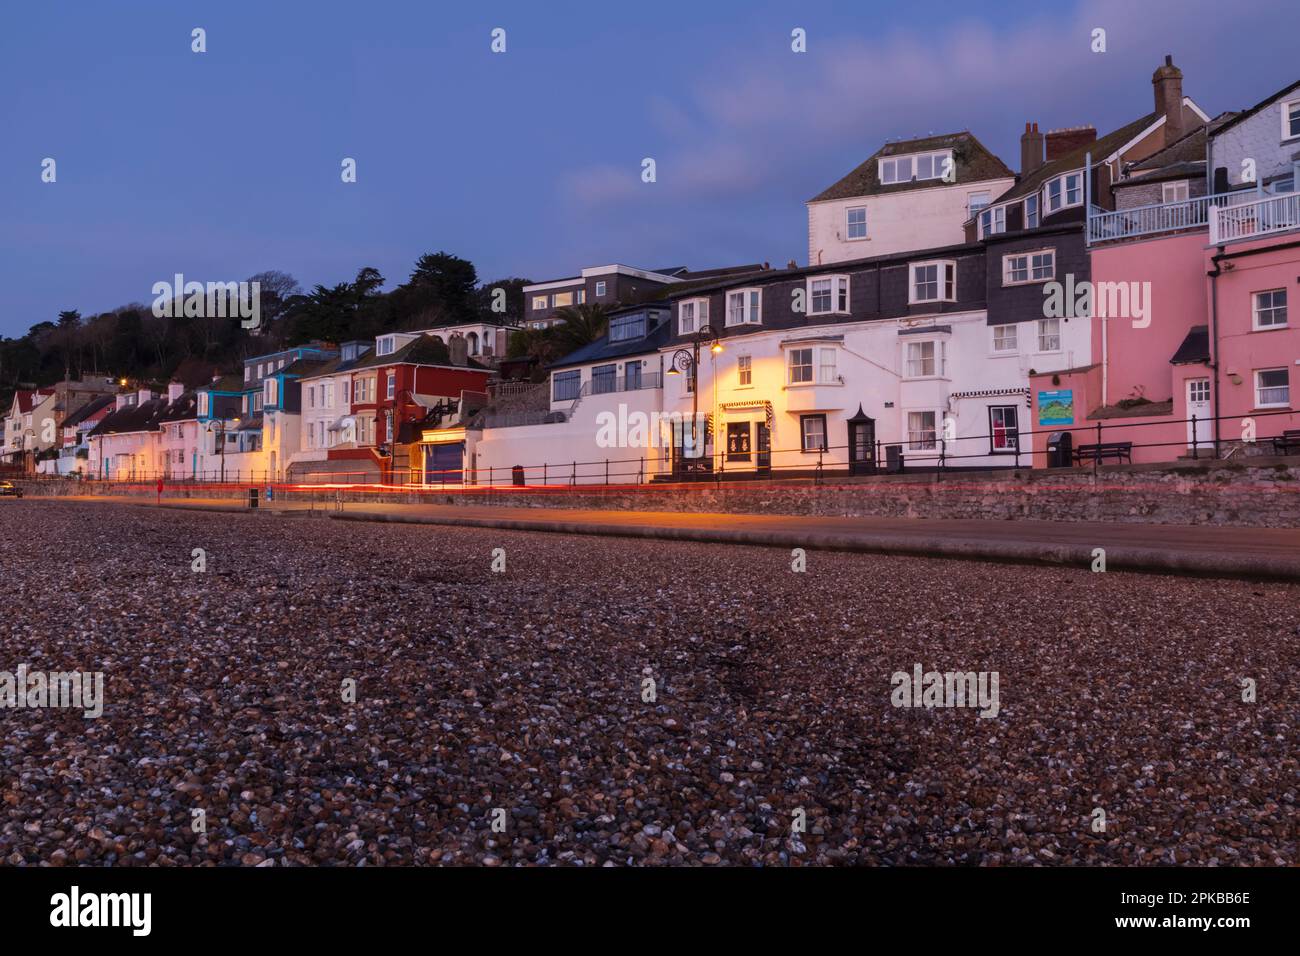 Angleterre, Dorset, la côte jurassique, Lyme Regis, coloré Beachfront Properties Banque D'Images